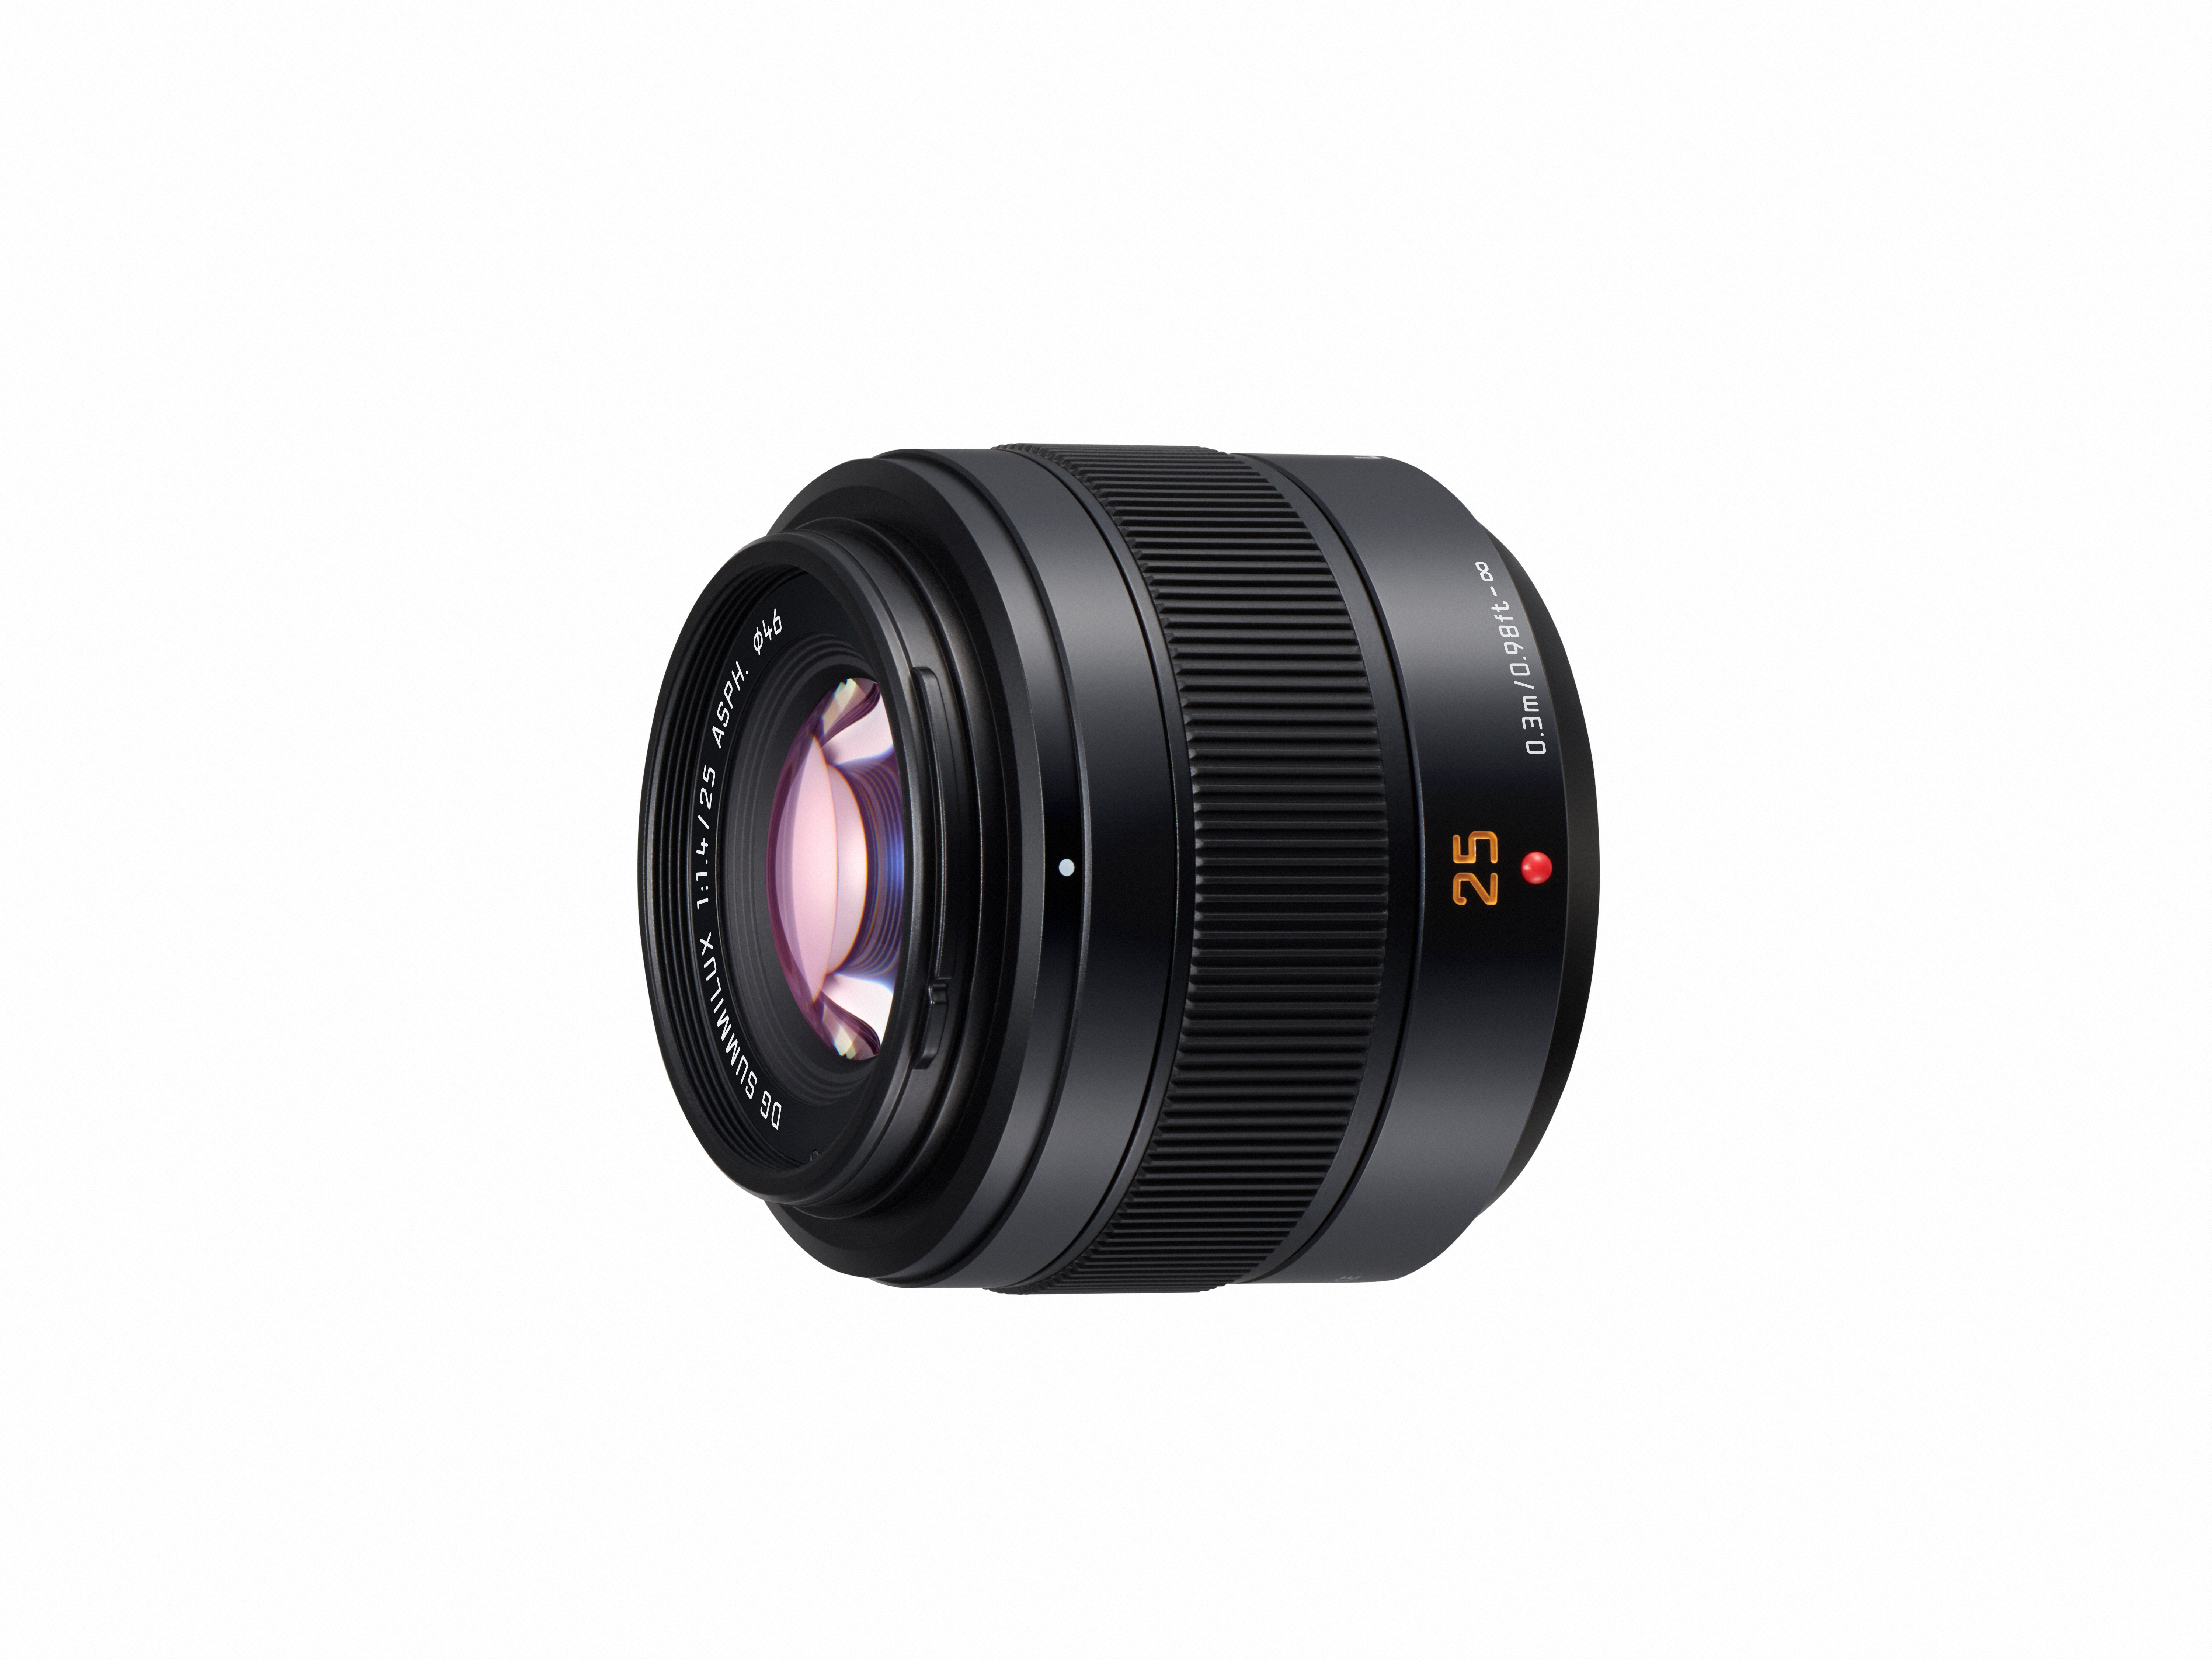 Beeldhouwer Op en neer gaan nerveus worden Panasonic's Leica Summilux 25mm F1.4 II ASPH Lens Will Cost $699.99